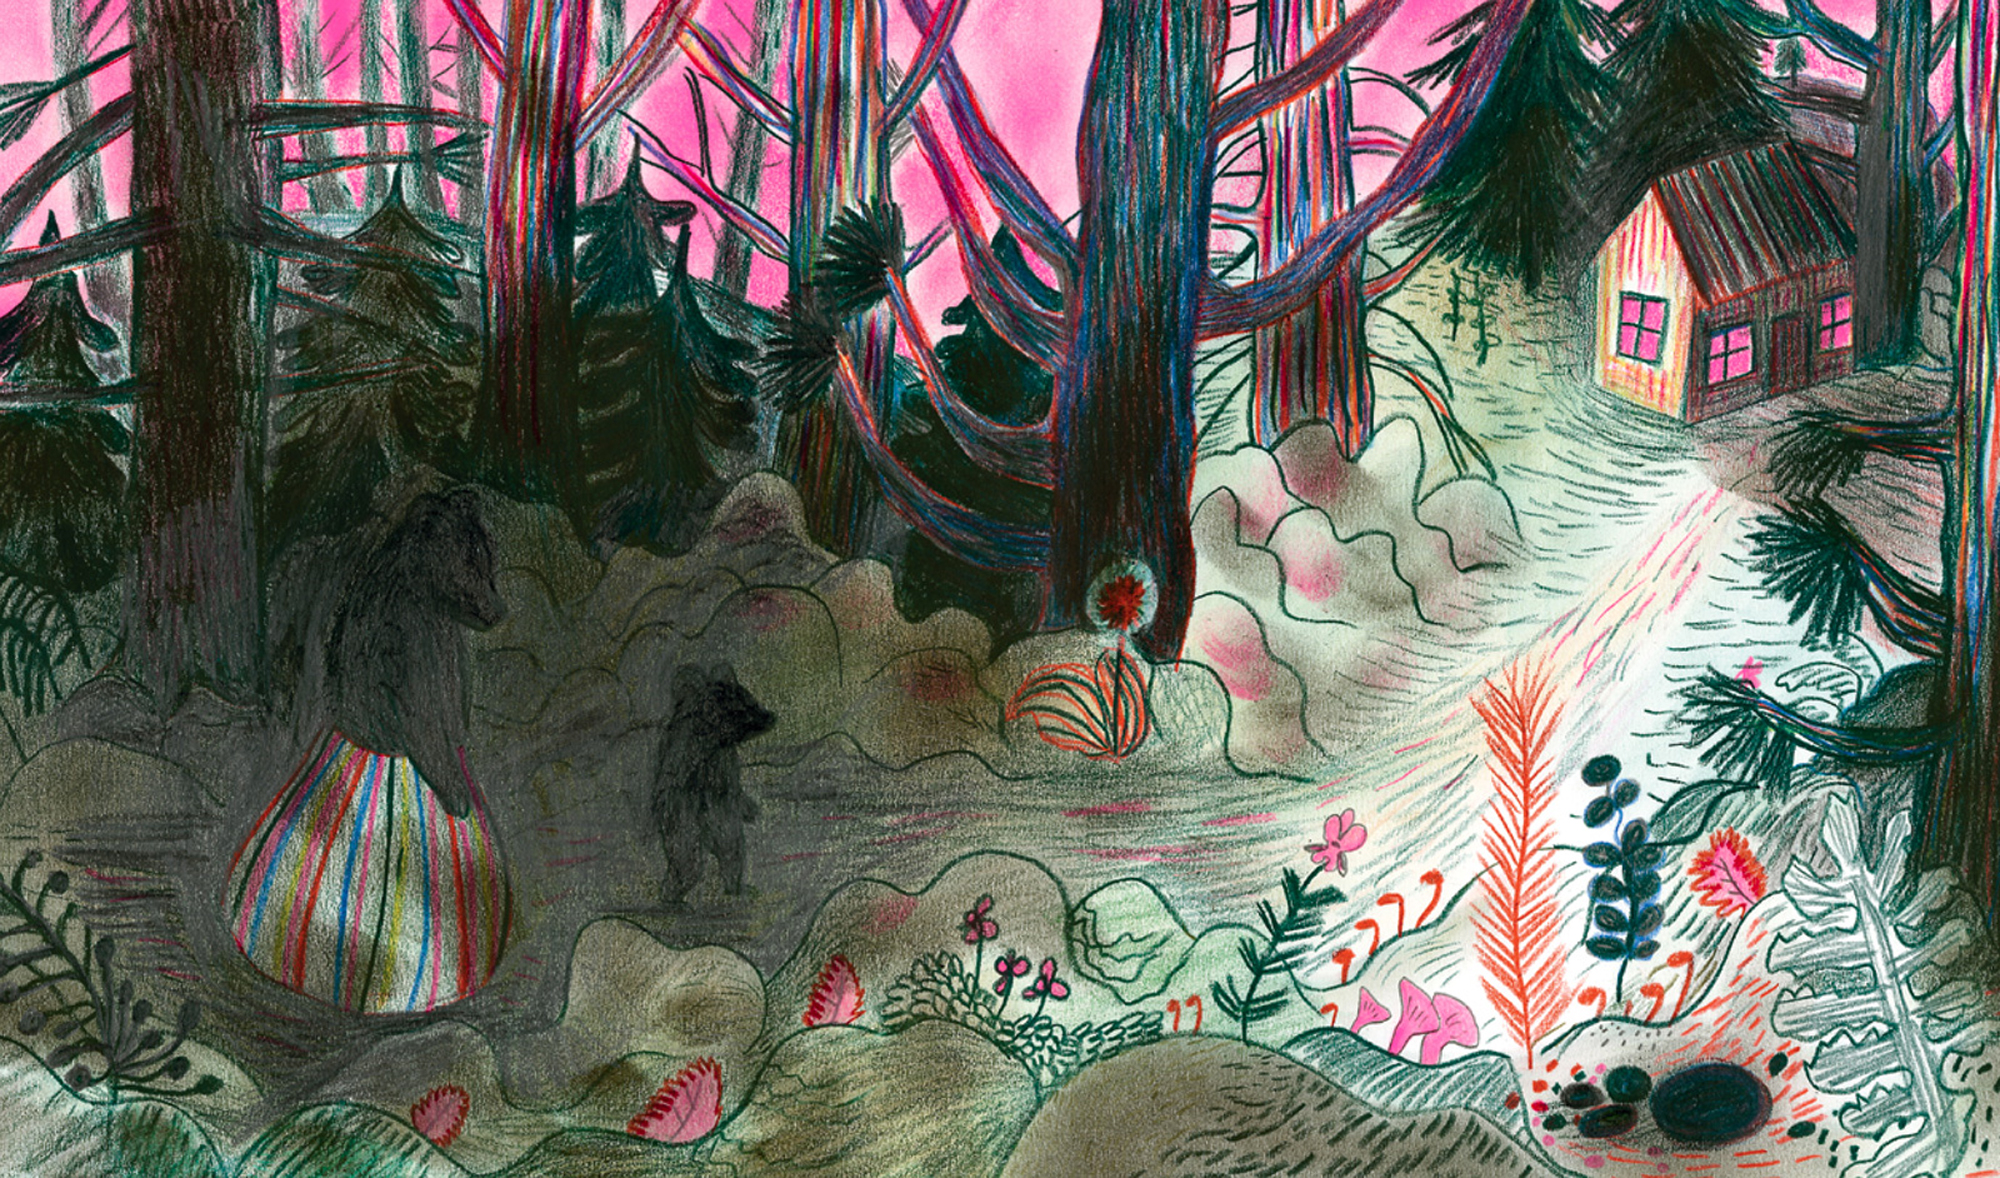 Illustration de Kitty Crowther. L'illustration représente une forêt très sombre. Un ours en jupe et un ourson se dirigent vers une hutte au fond de cette forêt. Le ciel est étrangement rose.